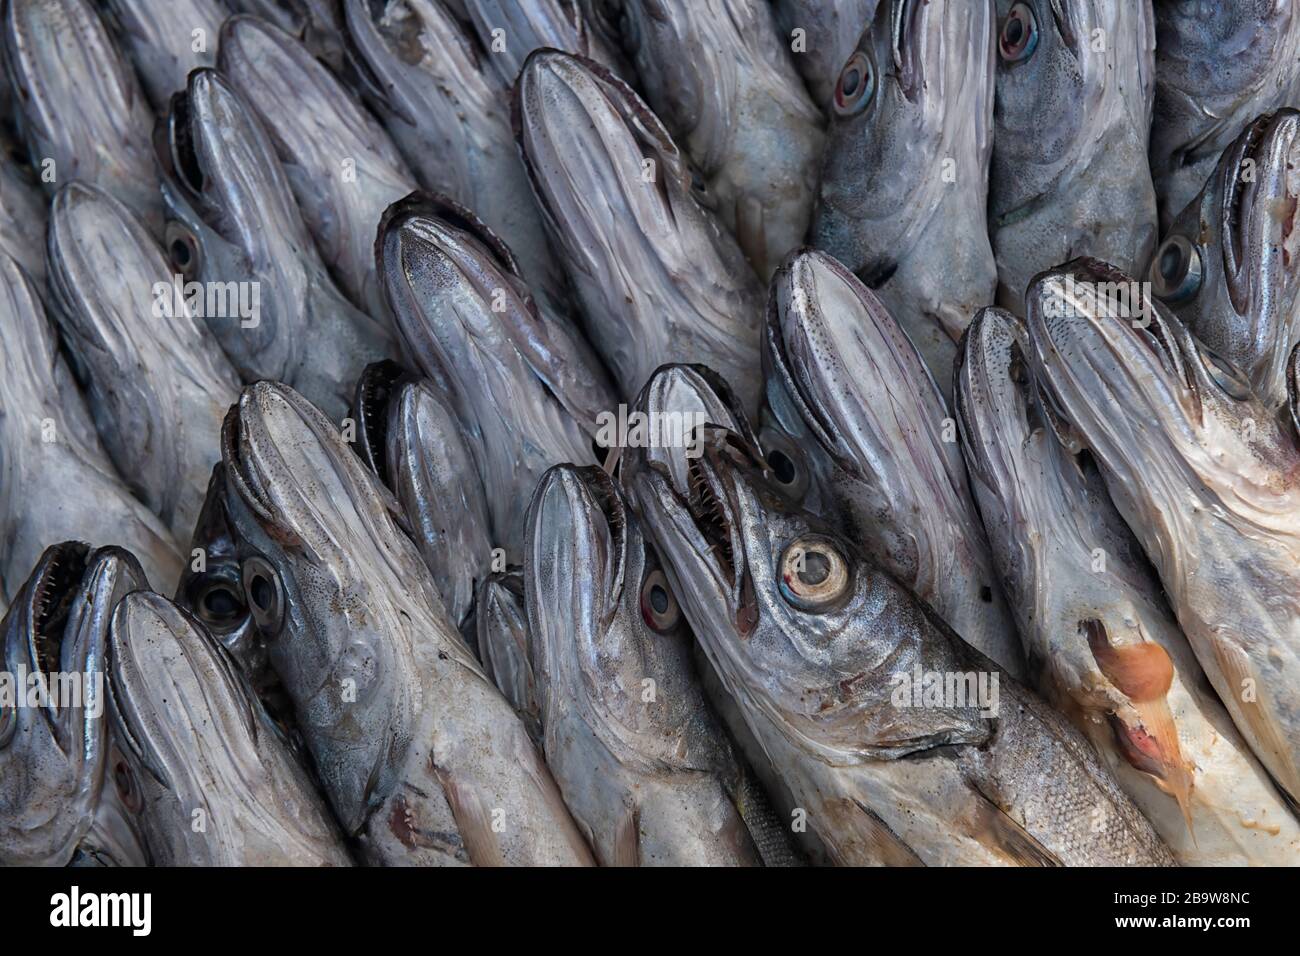 Merling oder Whiting Fisch auf dem Fischmarkt von Essaouira, Marokko. Stockfoto